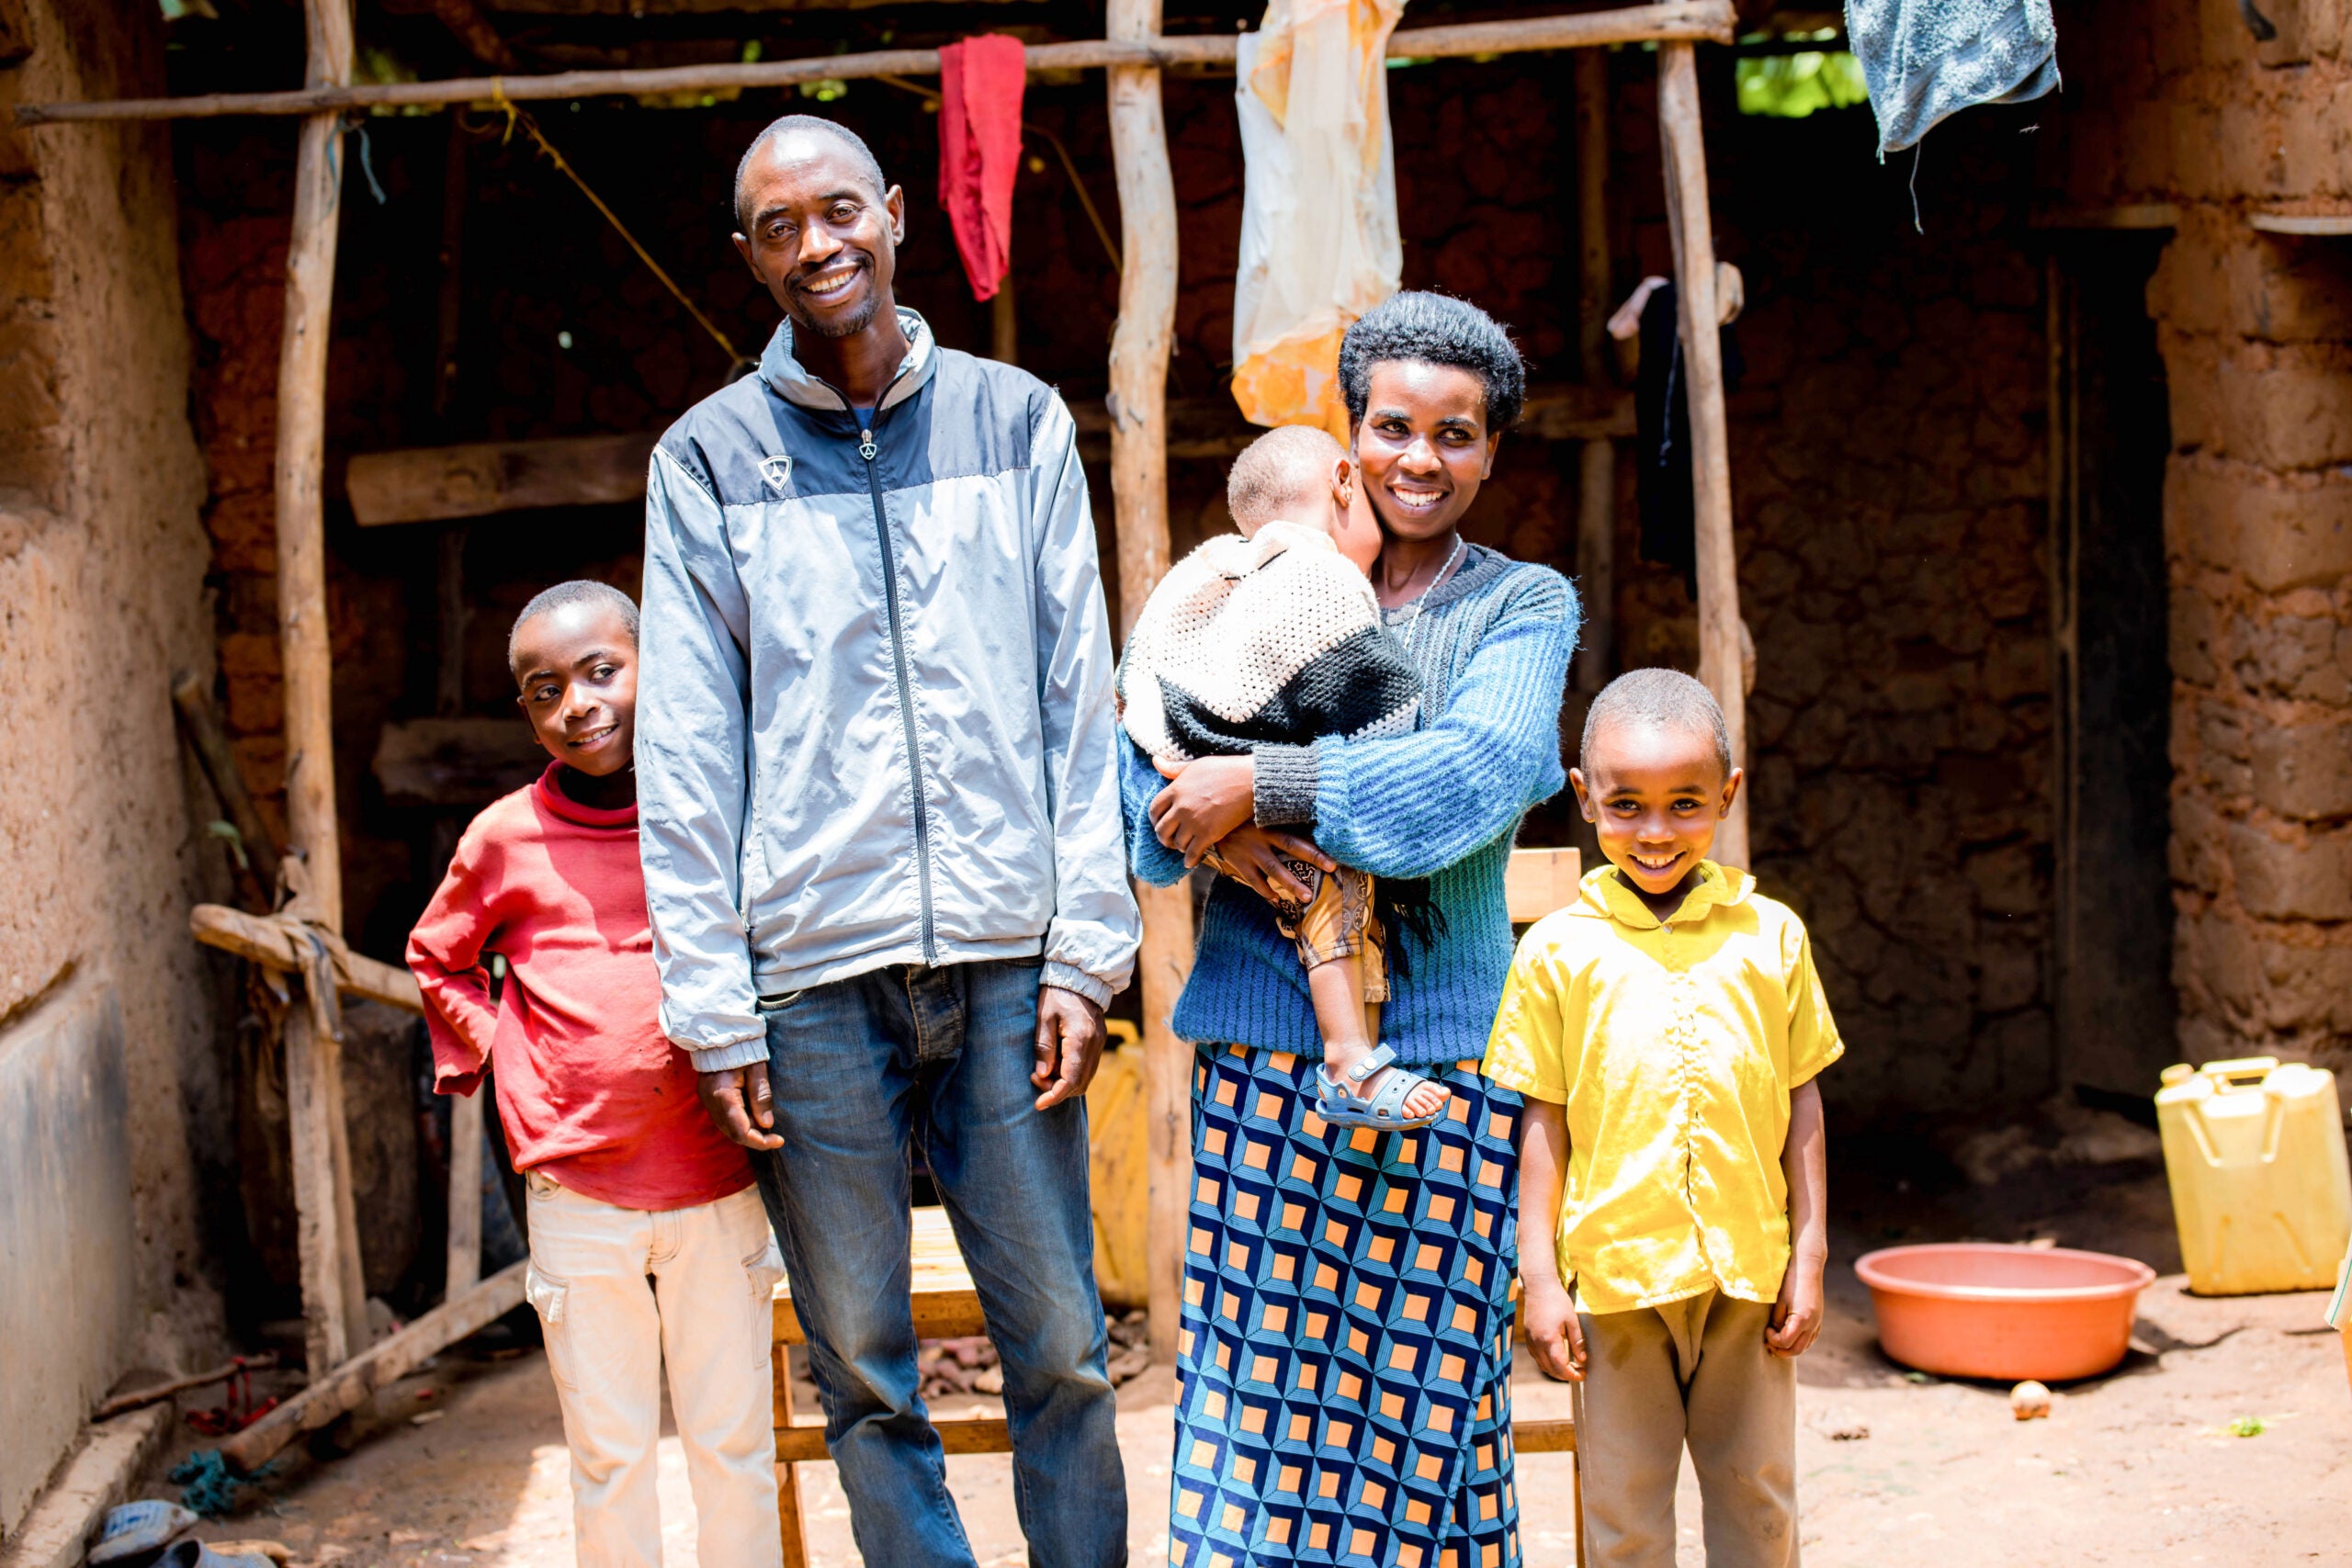 Um filho ruandês (camisa vermelha), pai (jaqueta cinza), bebê (camisa branca) segurado pela mãe (suéter azul e cinza) e filho (camisa amarela) posam para um retrato